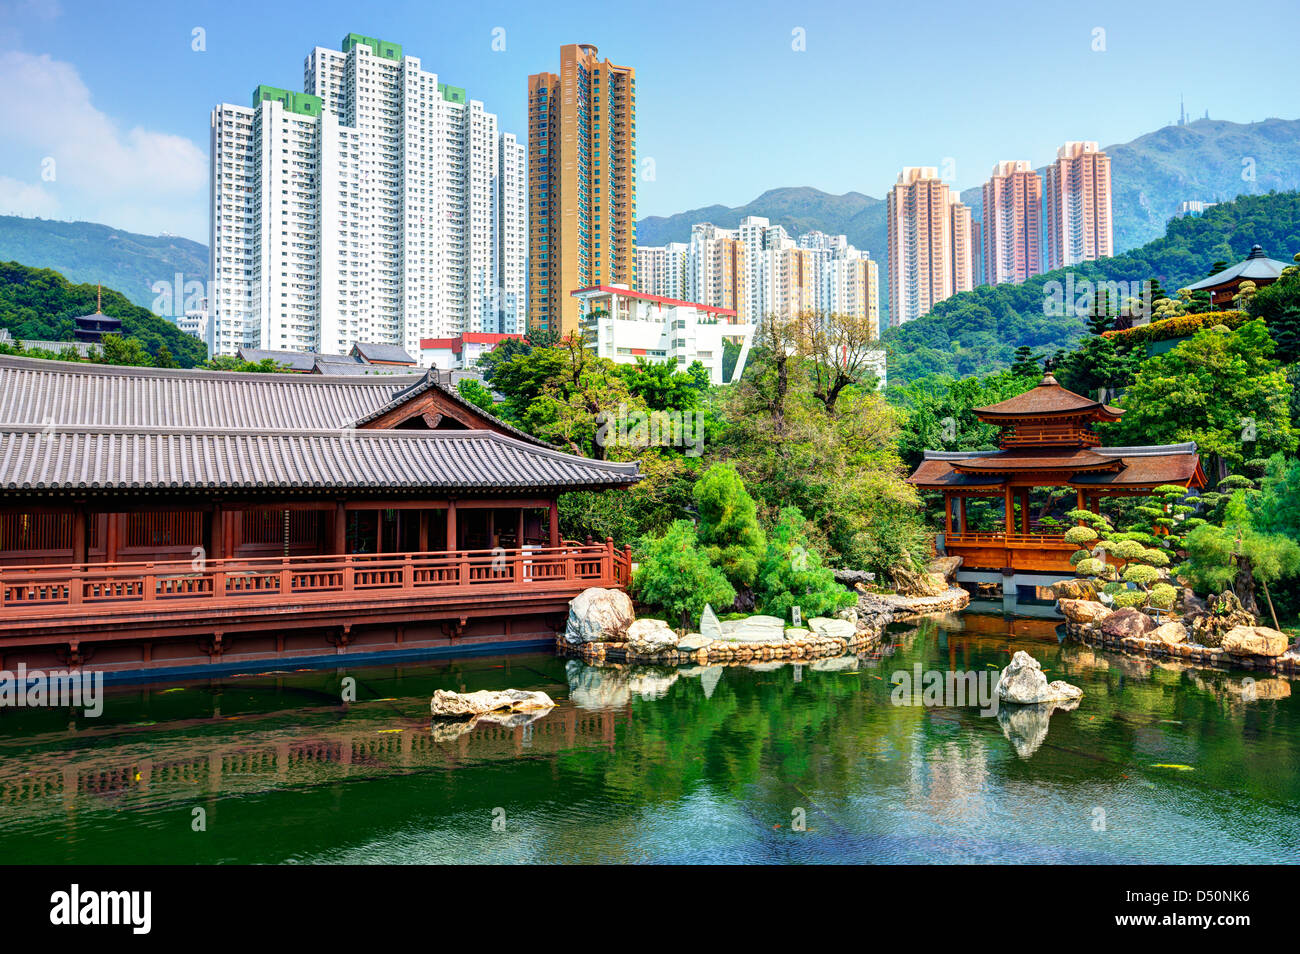 Teich und Stadtbild von Nan Lian Garden in Hong Kong, China betrachtet. Stockfoto